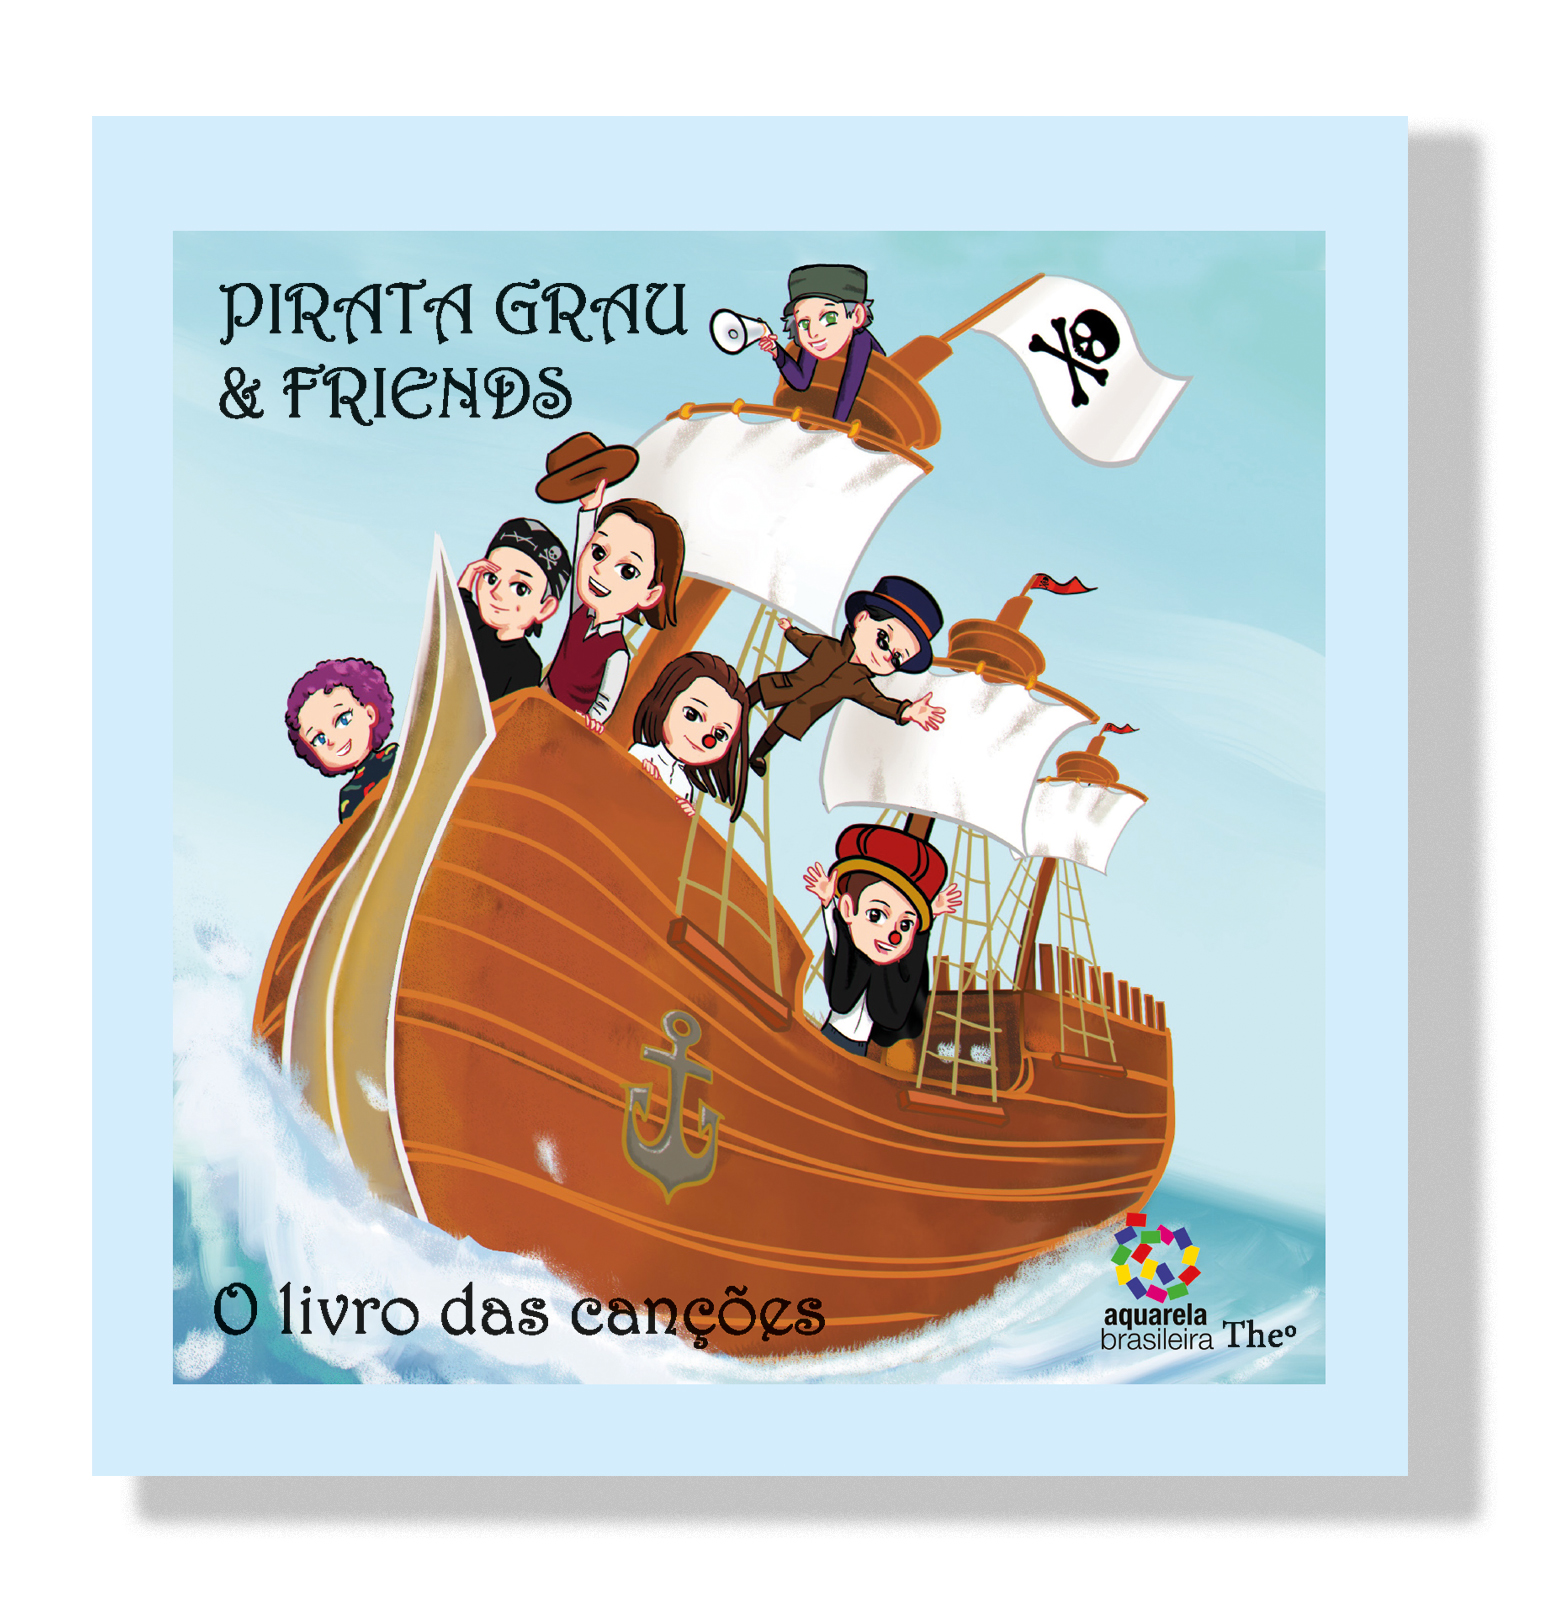 Pirata Grau & Friends_capa 3D